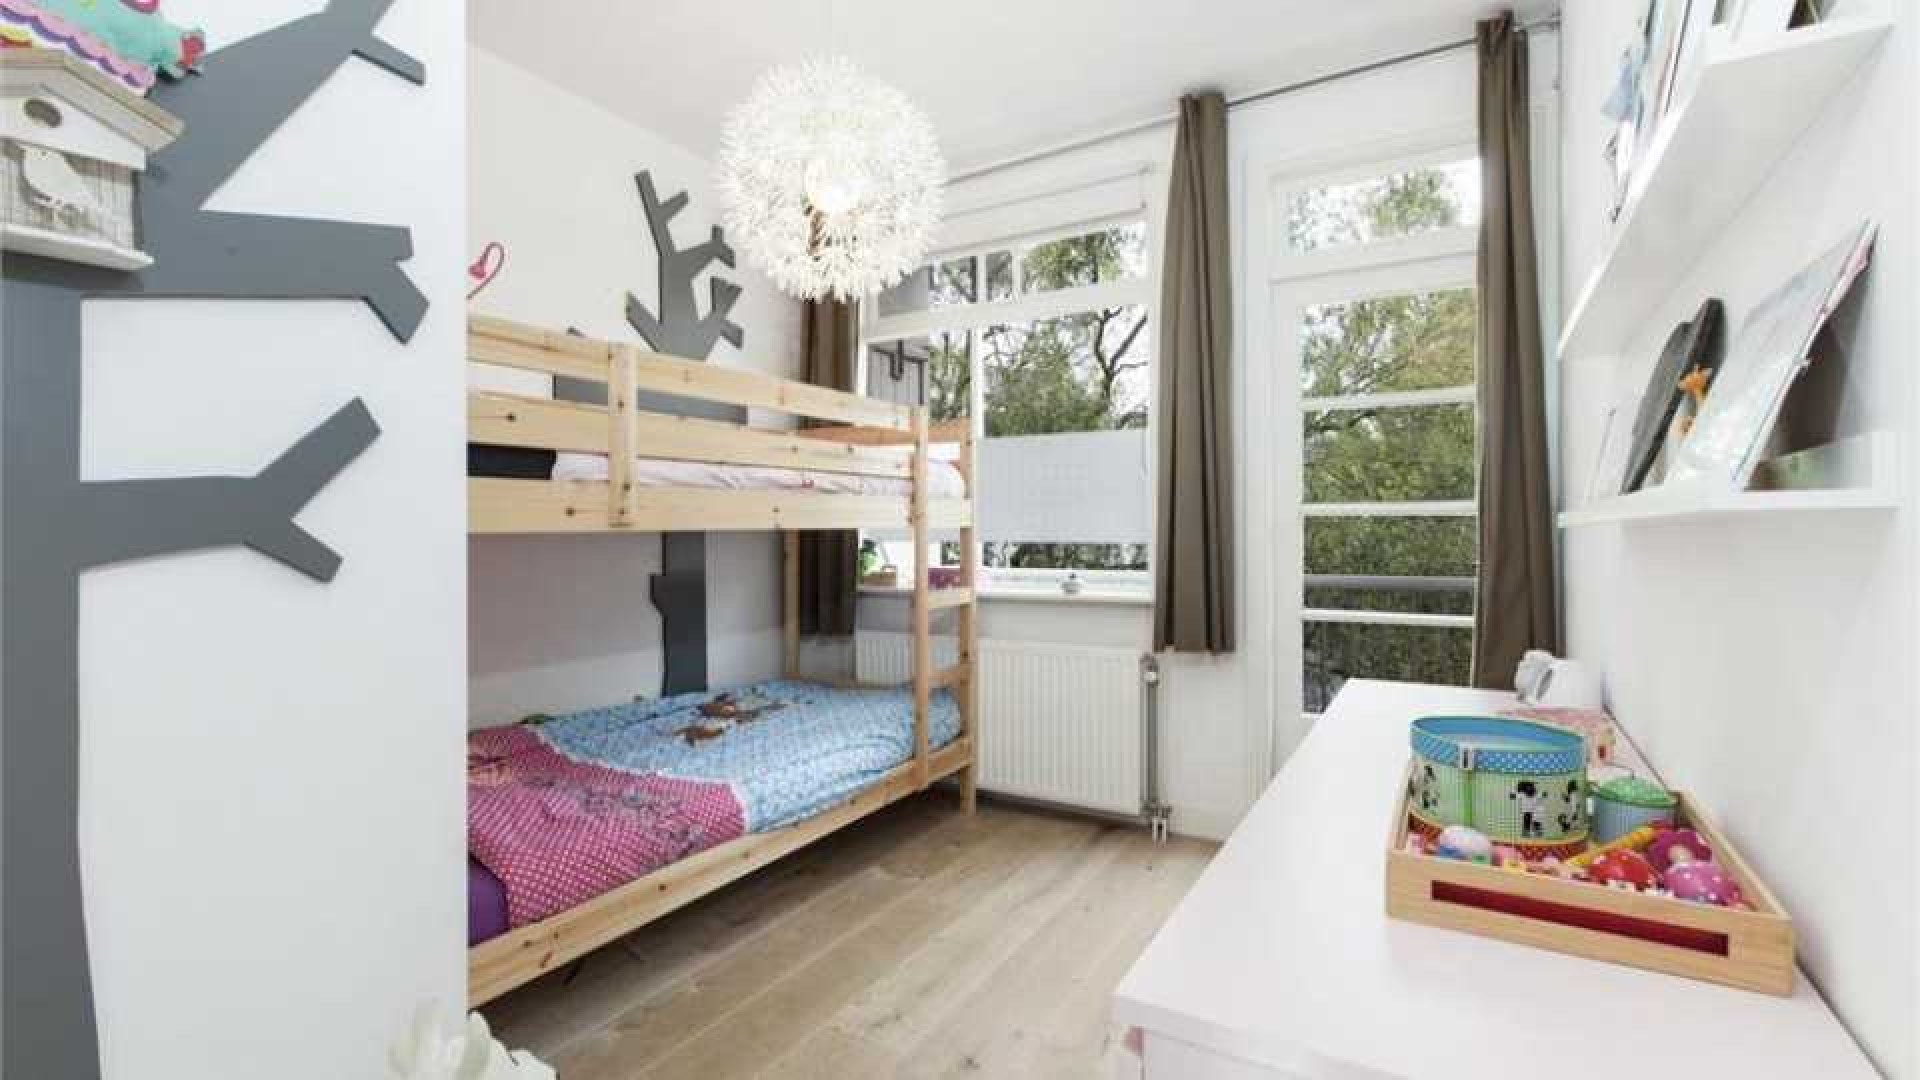 Tjitske Reidinga koopt eigen huis in Amsterdam. Zie foto's 9